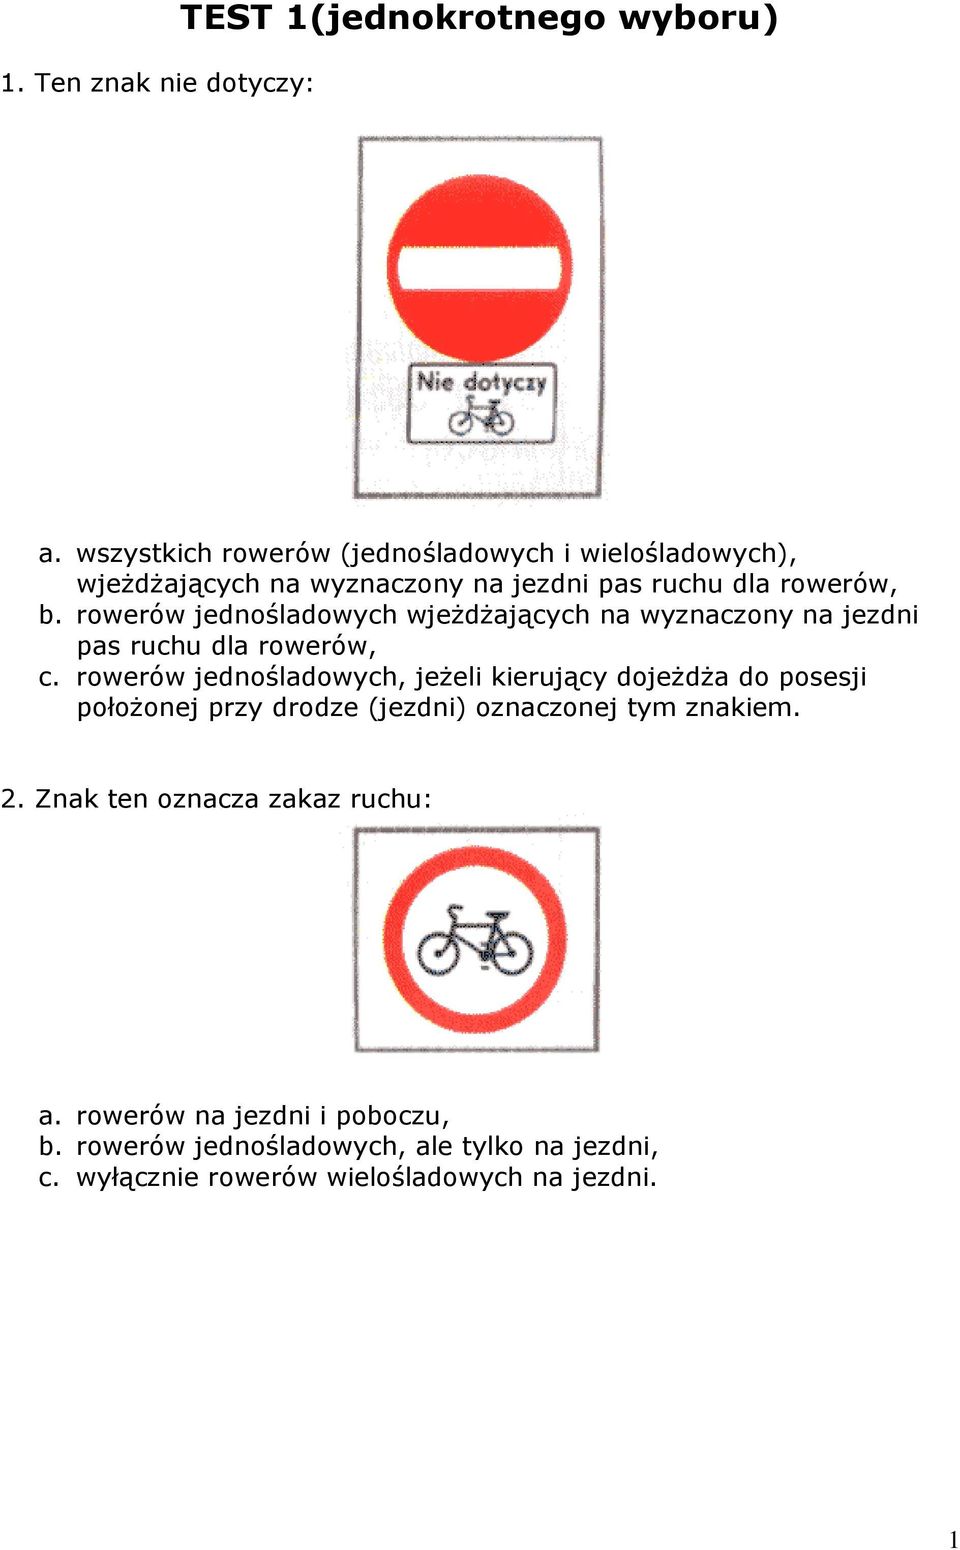 rowerów jednośladowych wjeżdżających na wyznaczony na jezdni pas ruchu dla rowerów, c.